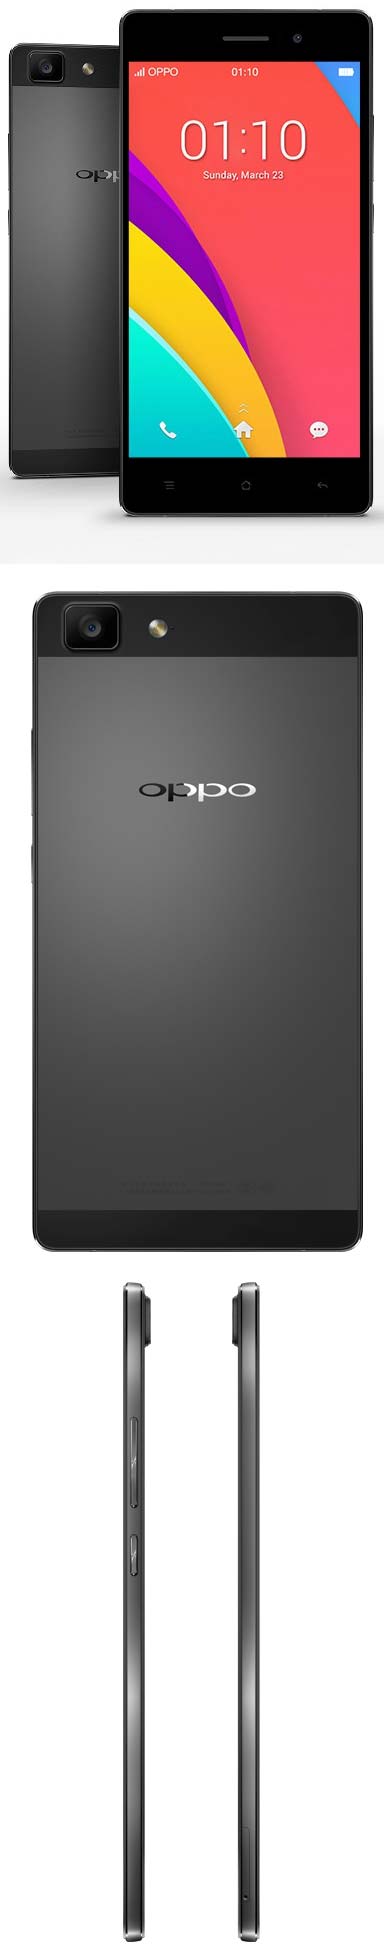 Фотографии серого варианта Oppo R5s